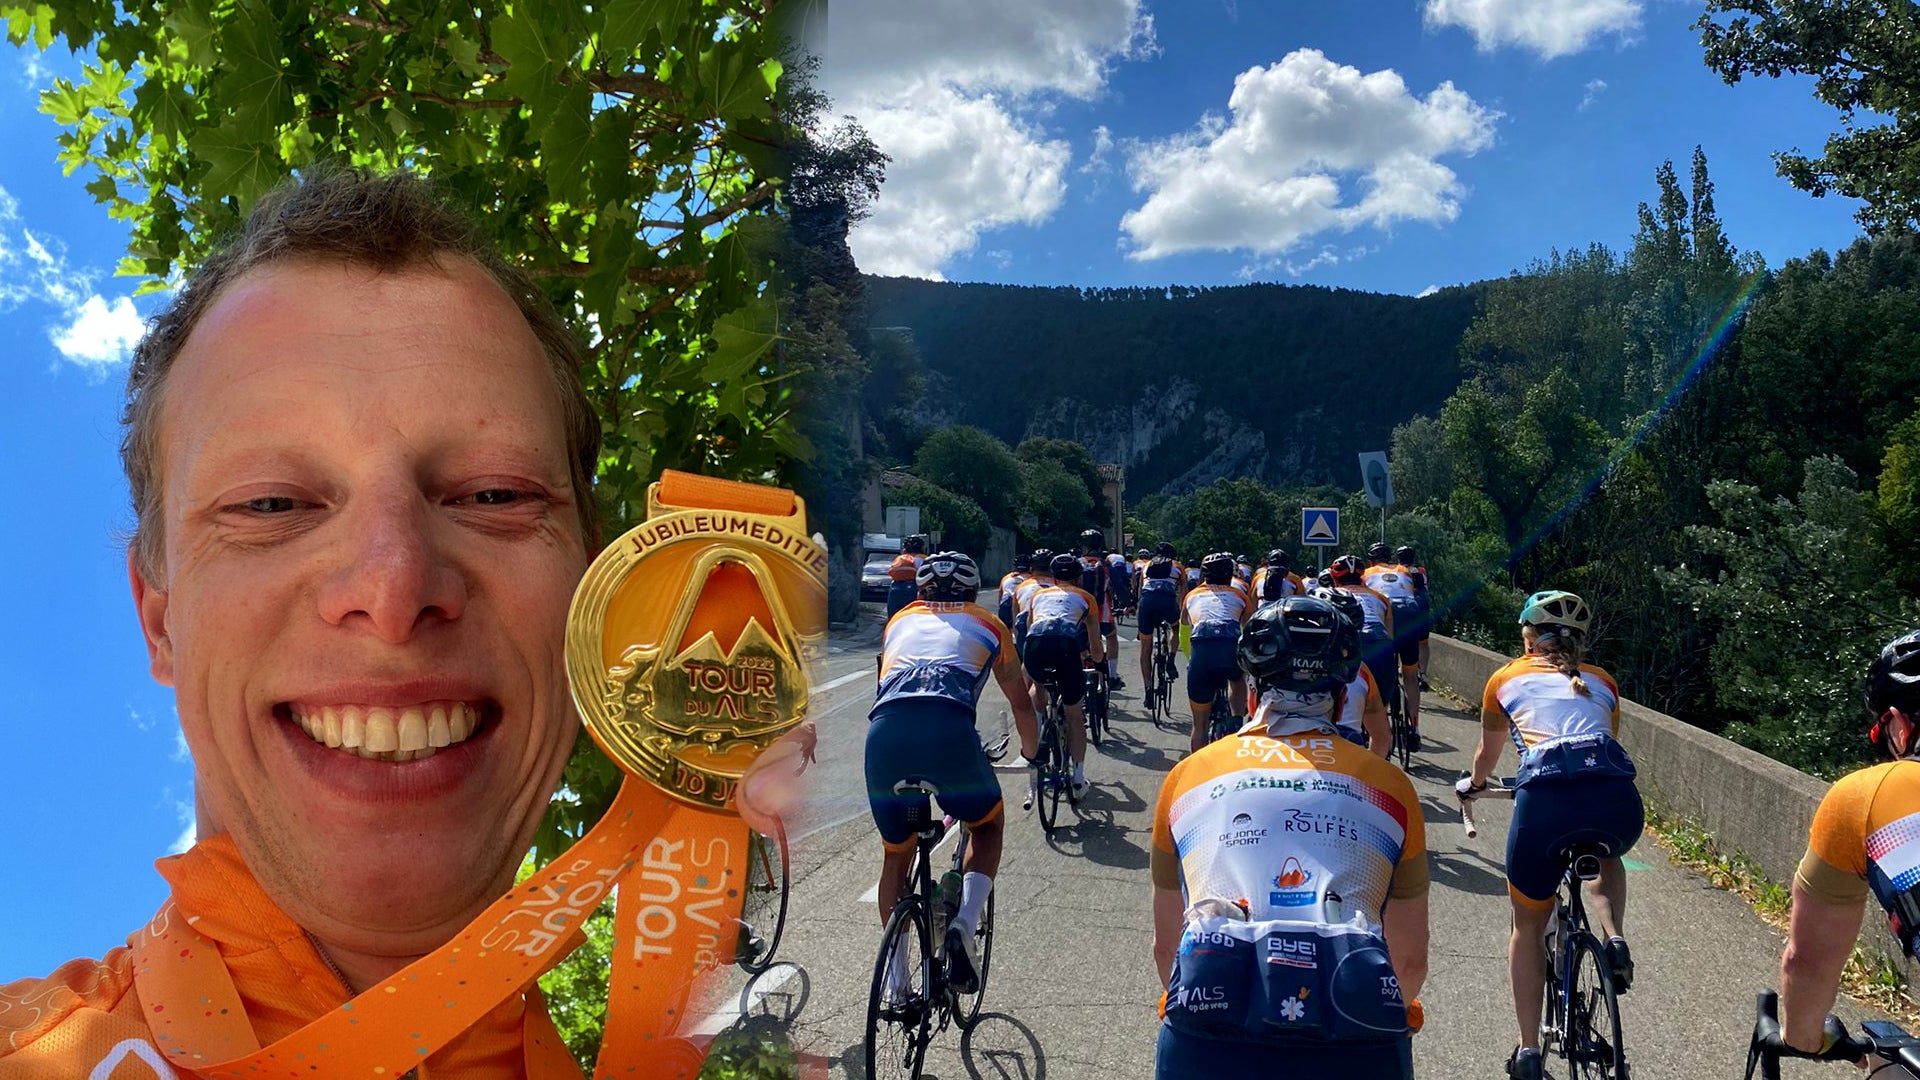 Wessel fietst twee keer de Mont Ventoux op voor zijn vader met ALS: "Hij is trots op mij"